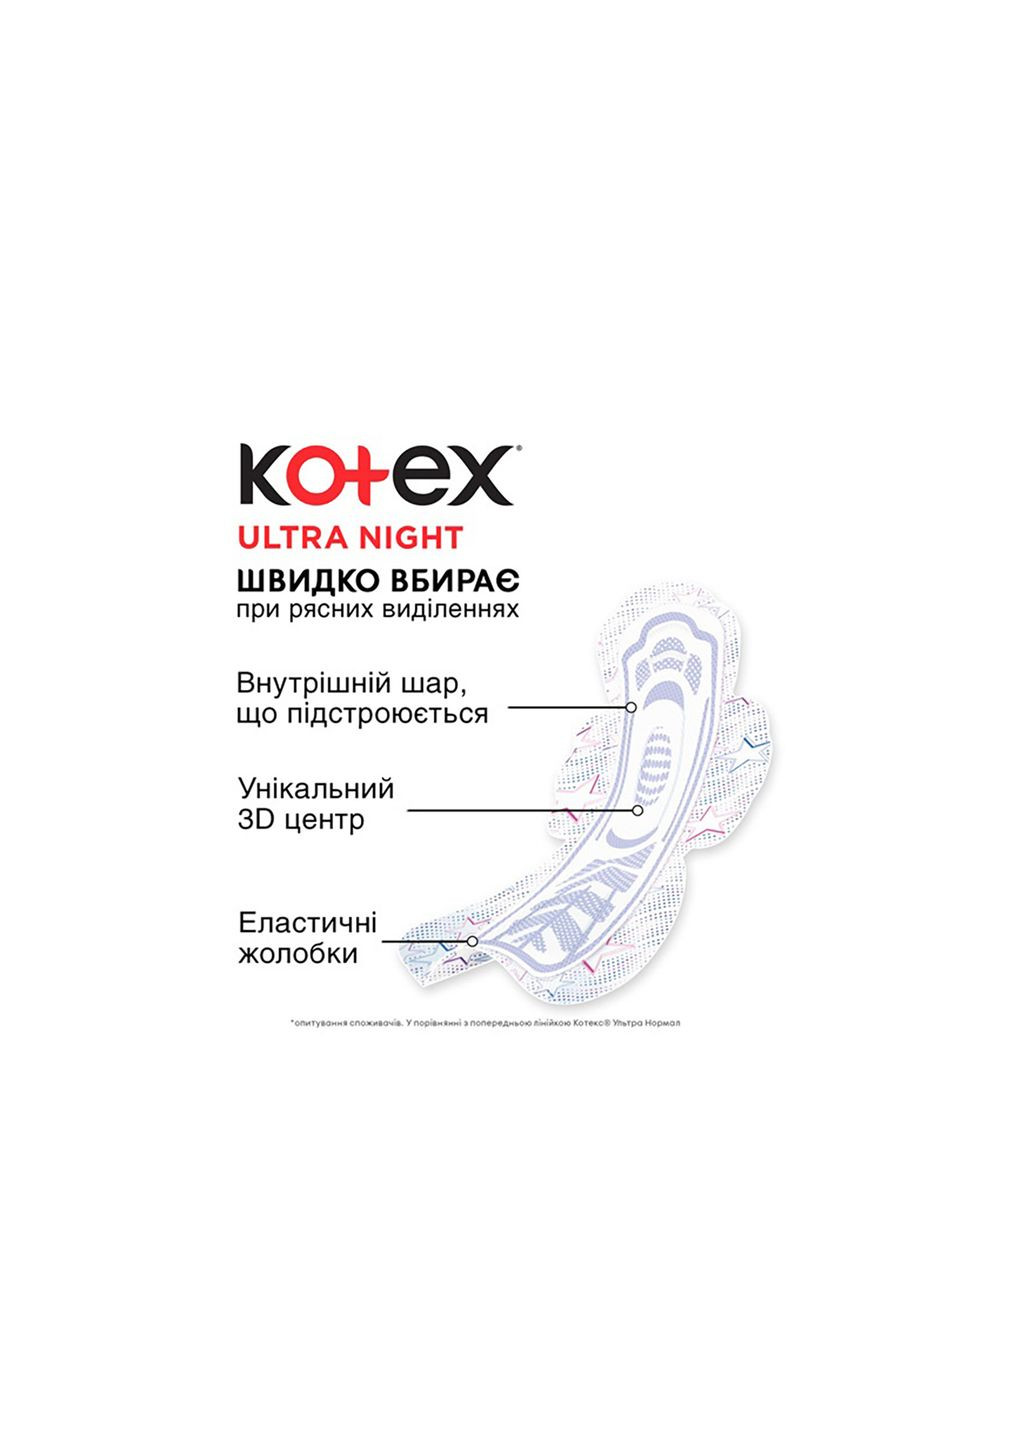 Прокладки Kotex ultra night 7 шт. (268146900)